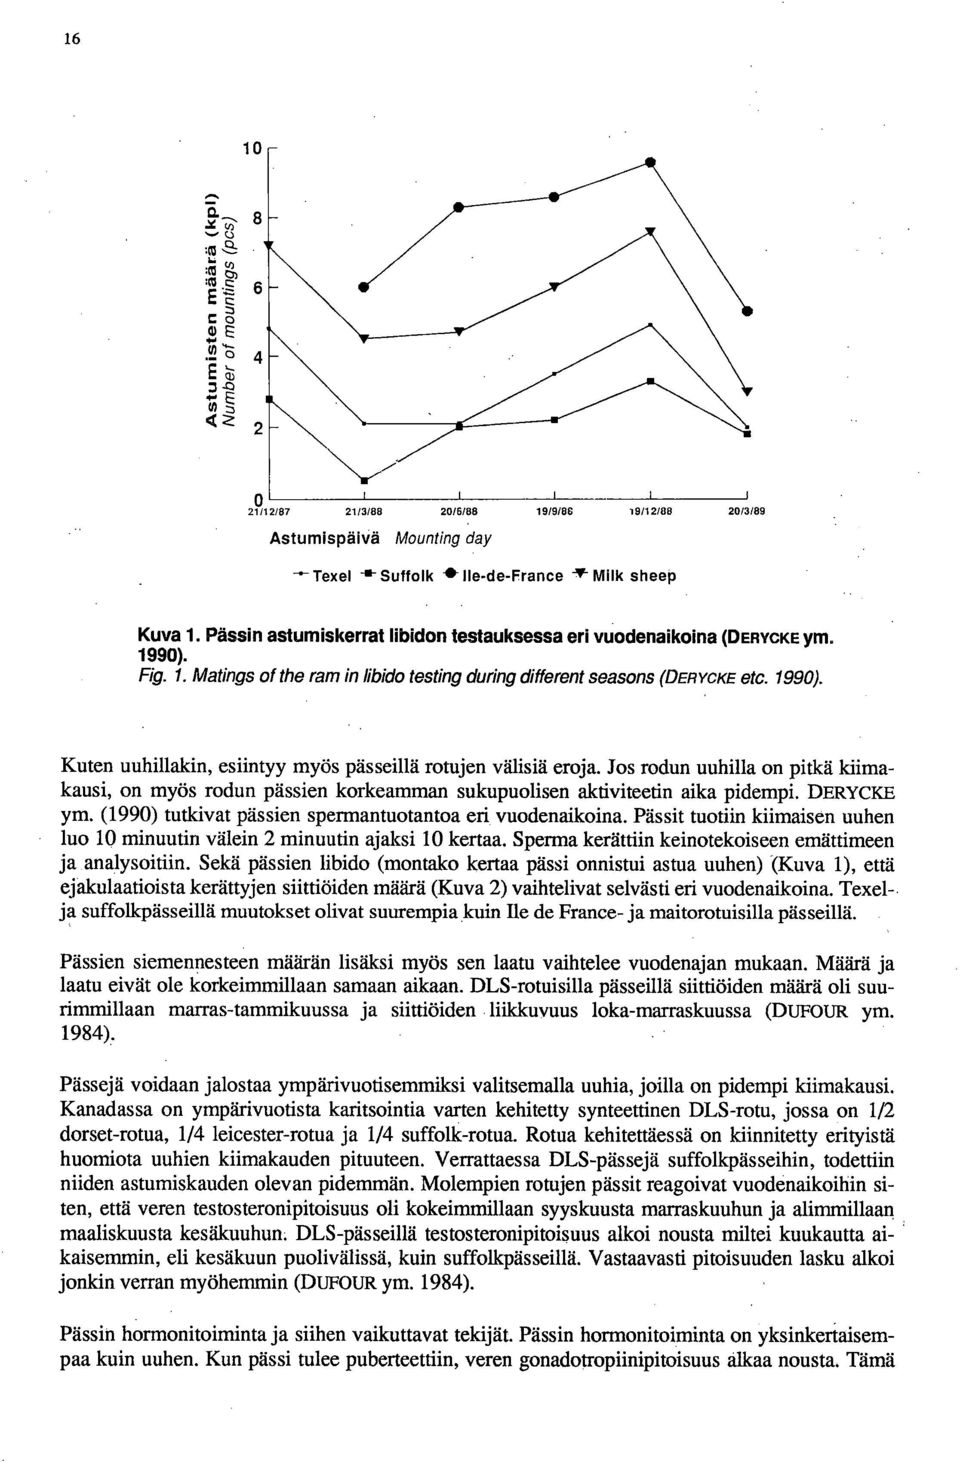 (1990) tutkivat pässien spermantuotantoa eri vuodenaikoina. Pässit tuotiin kiimaisen uuhen luo 10 minuutin välein 2 minuutin ajaksi 10 kertaa.